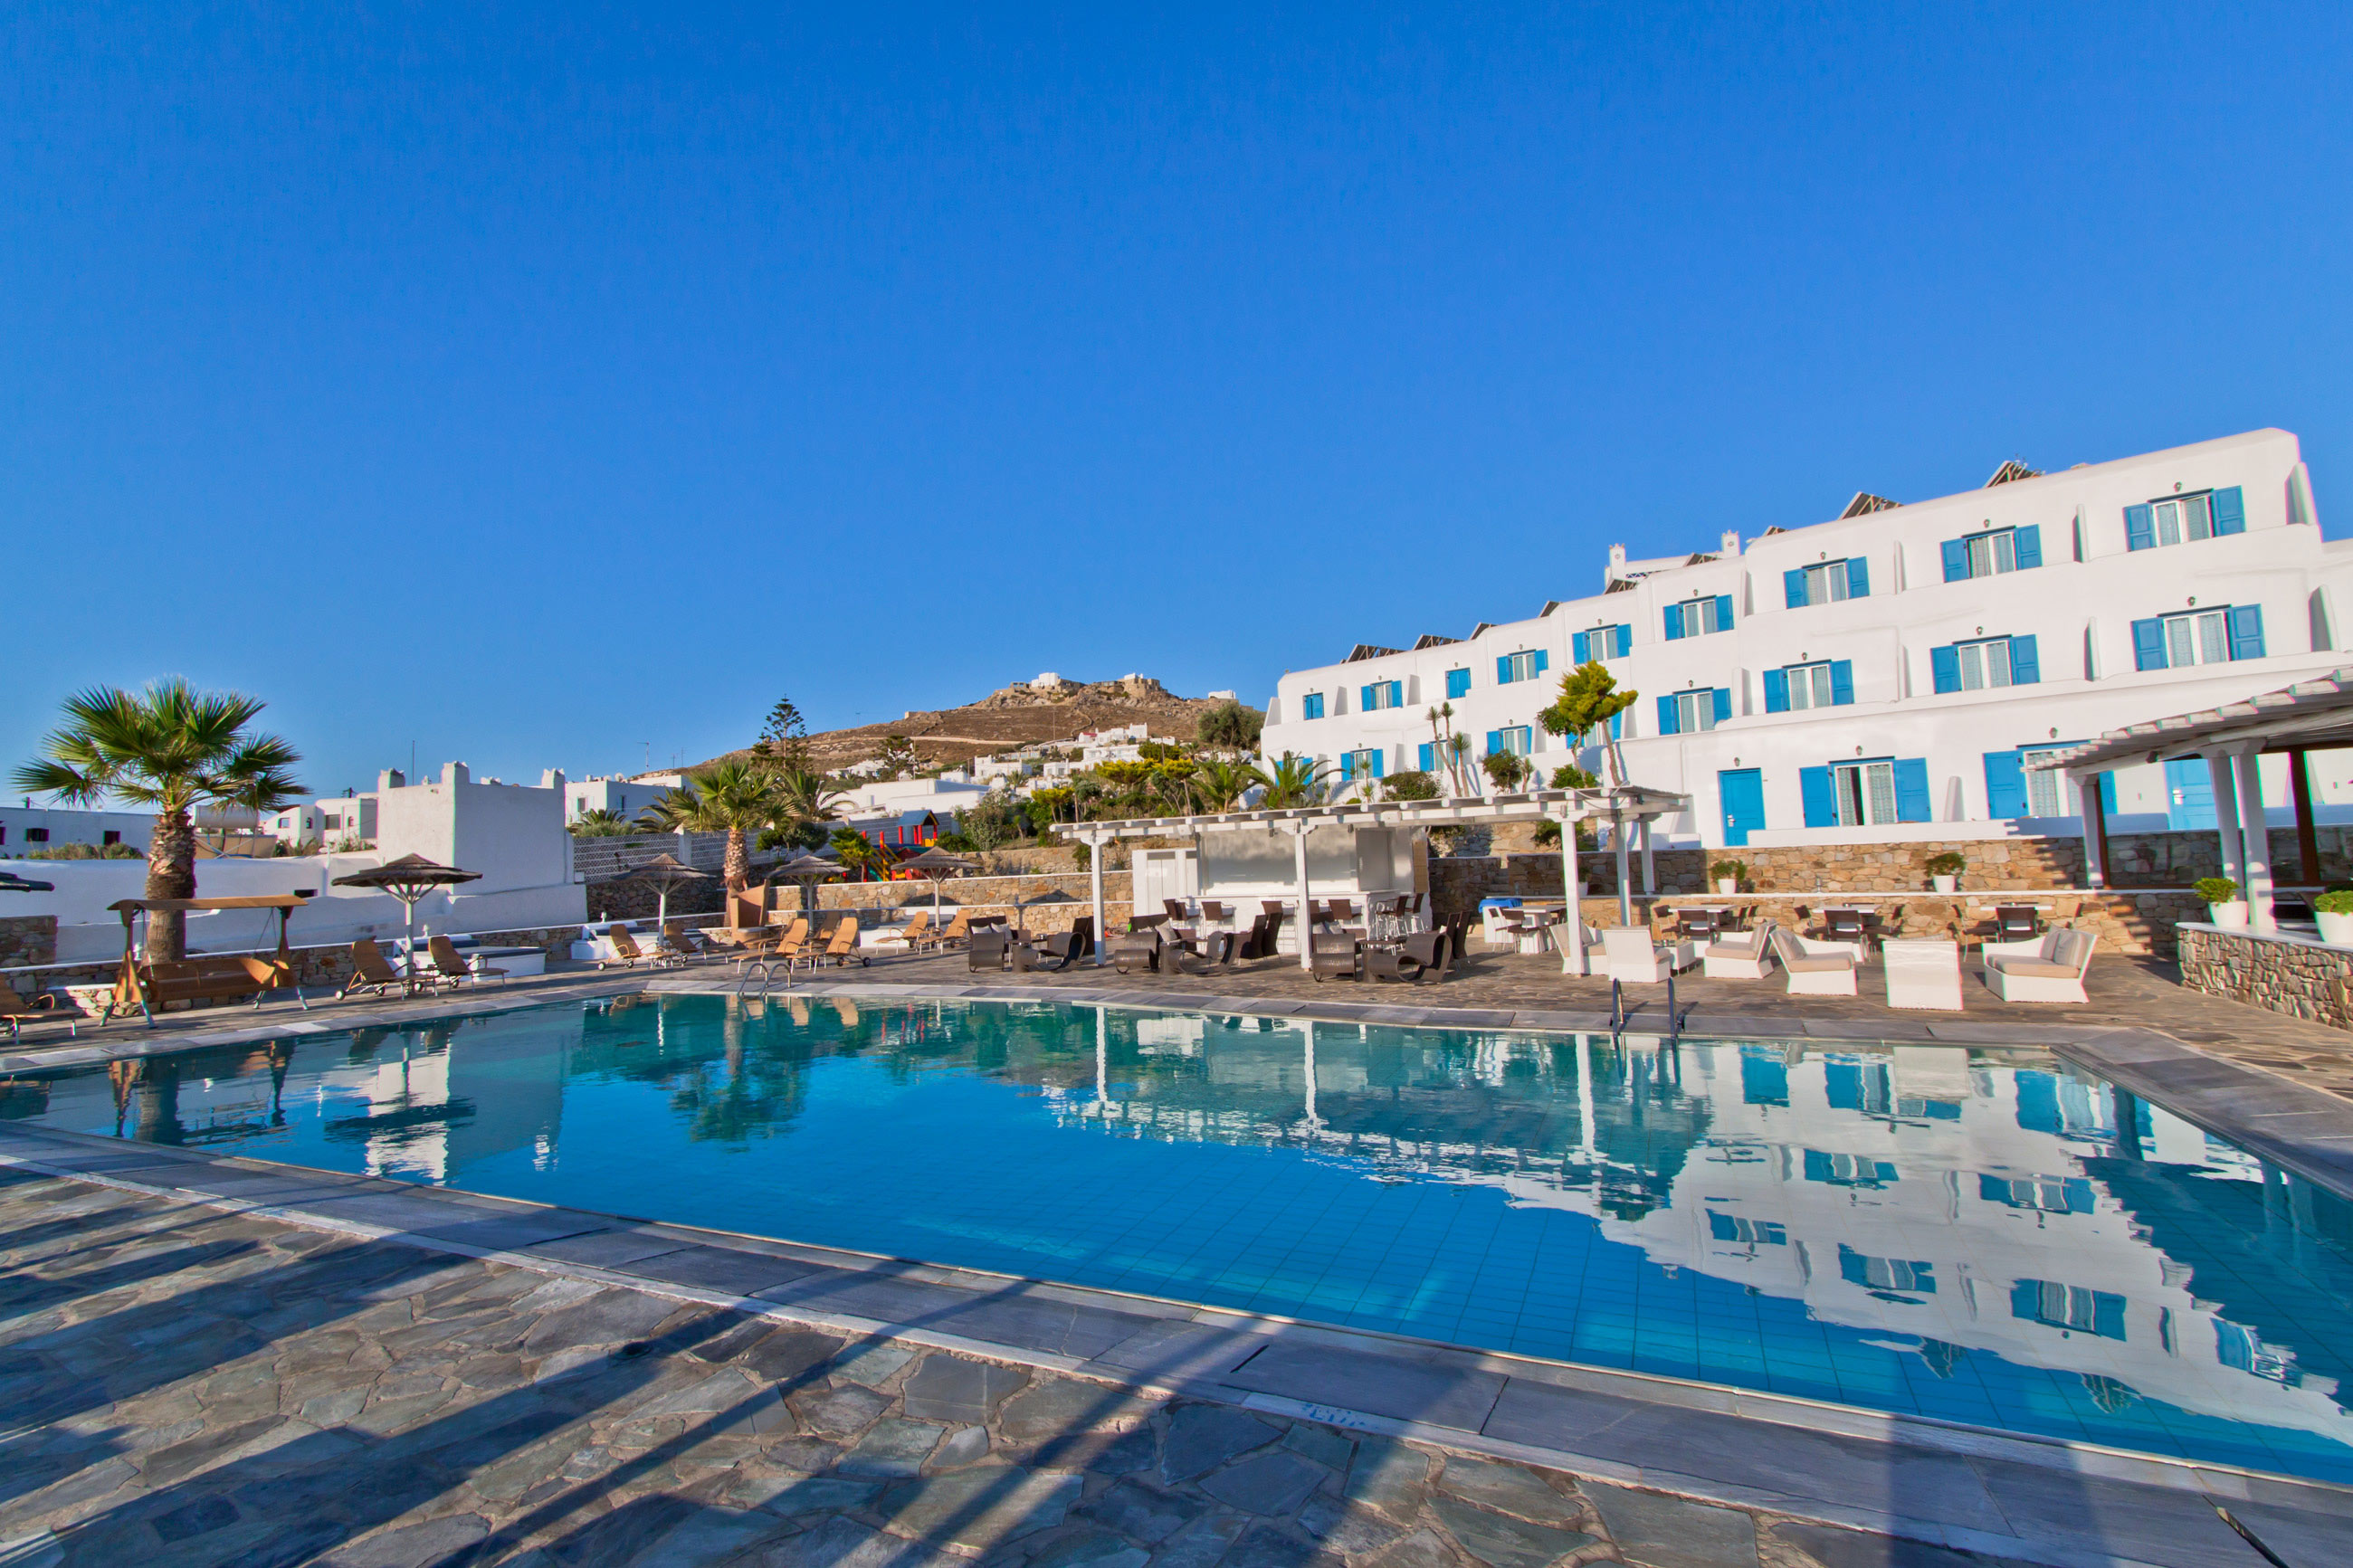 El hotel Yiannaki se alza sobre una colina con vistas a una de las playas más hermosas de Mykonos.